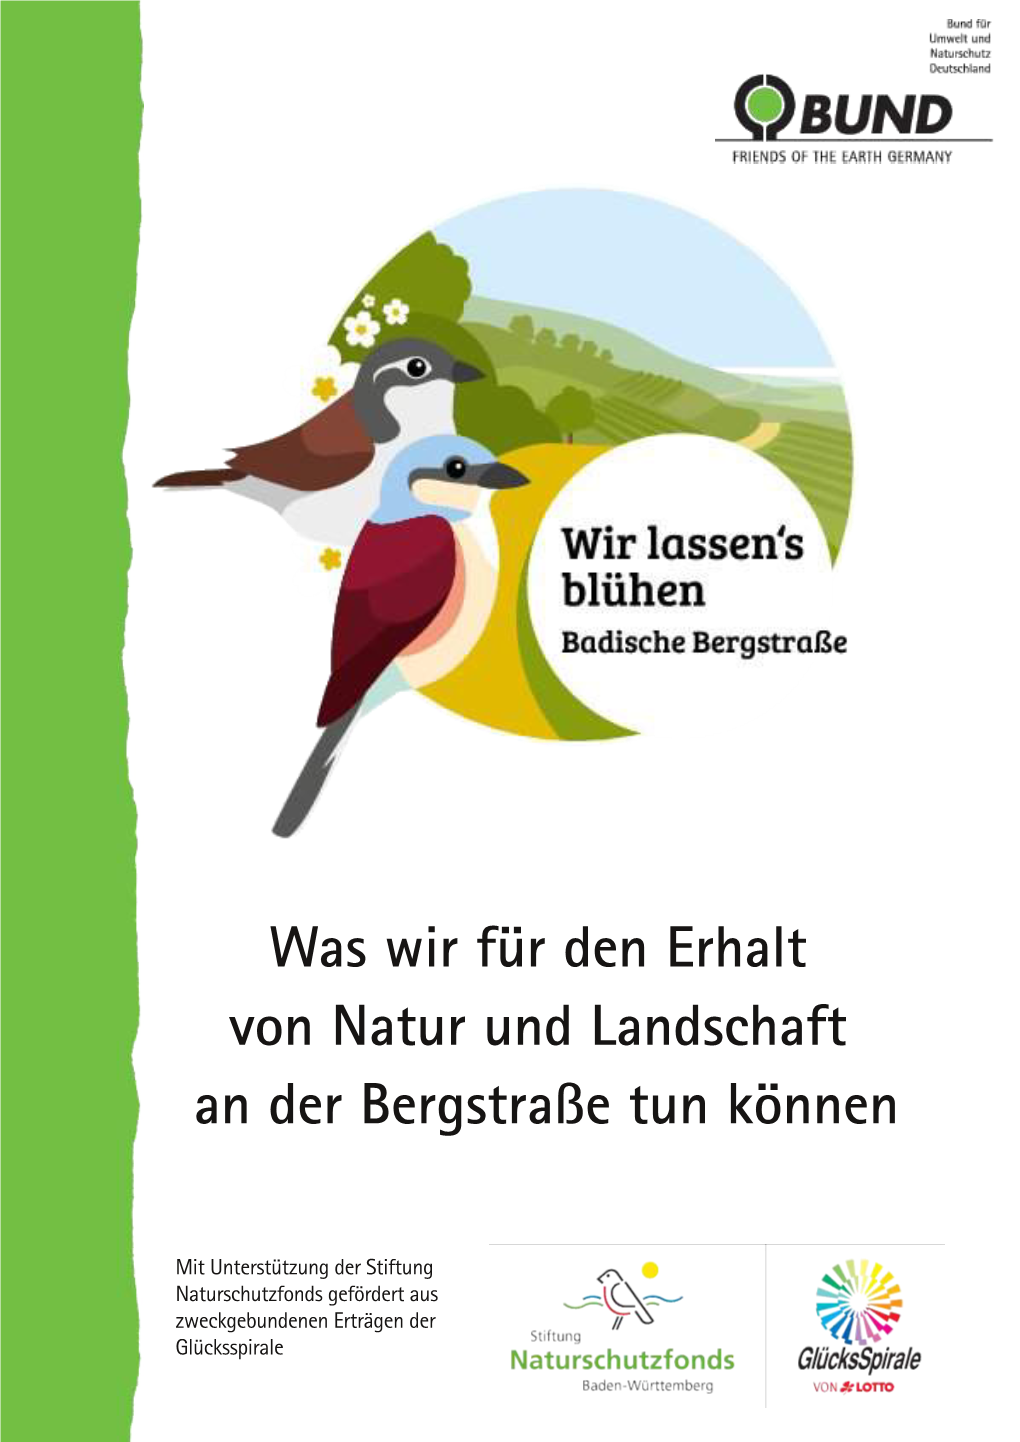 Was Wir Für Den Erhalt Von Natur Und Landschaft an Der Bergstraße Tun Können